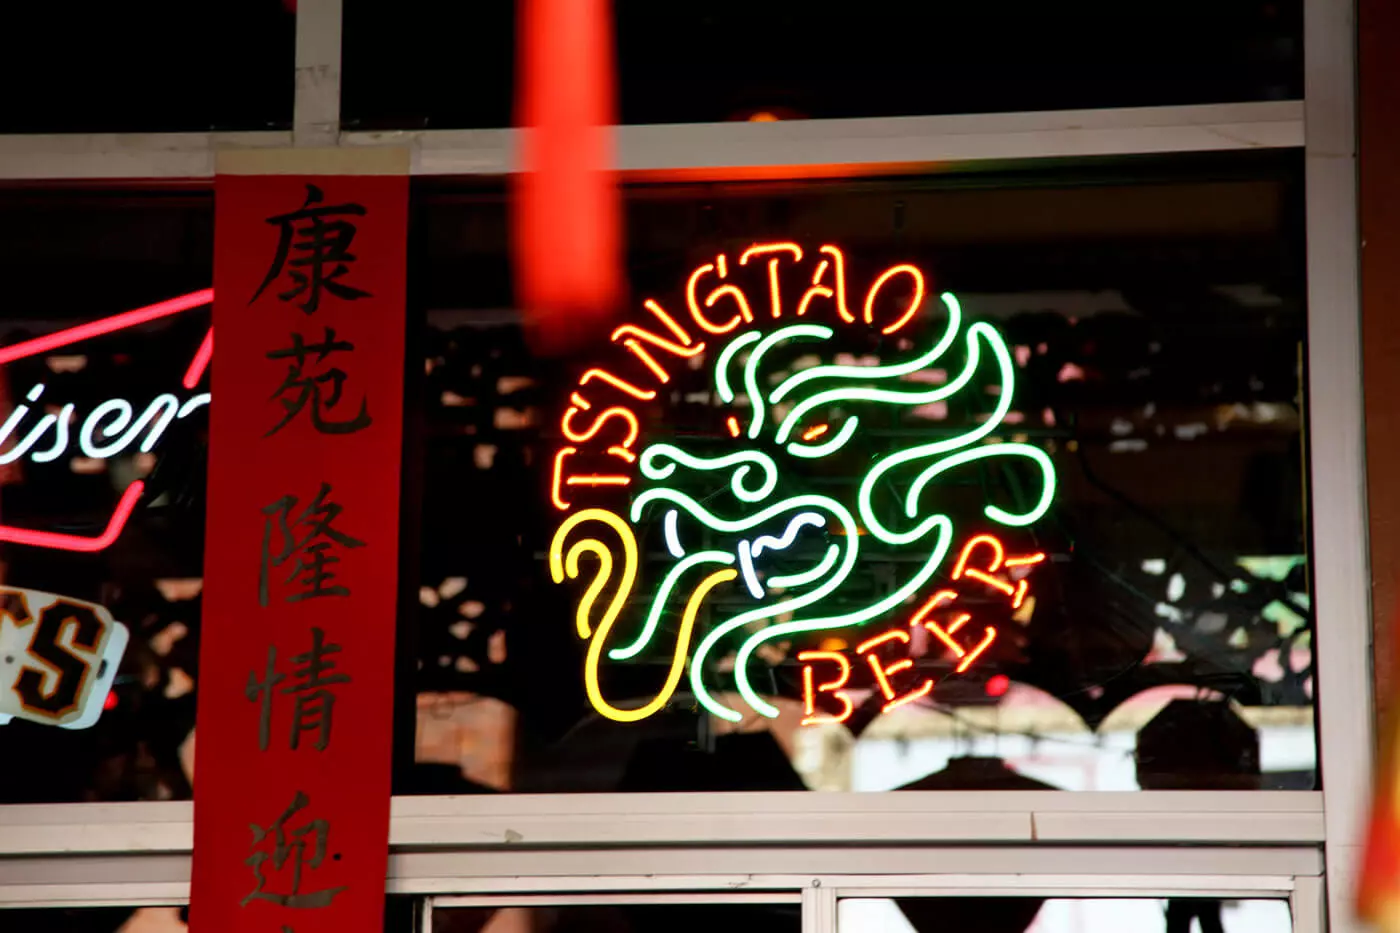 Leuchtreklame-Schild von "Tsingtao Beer".